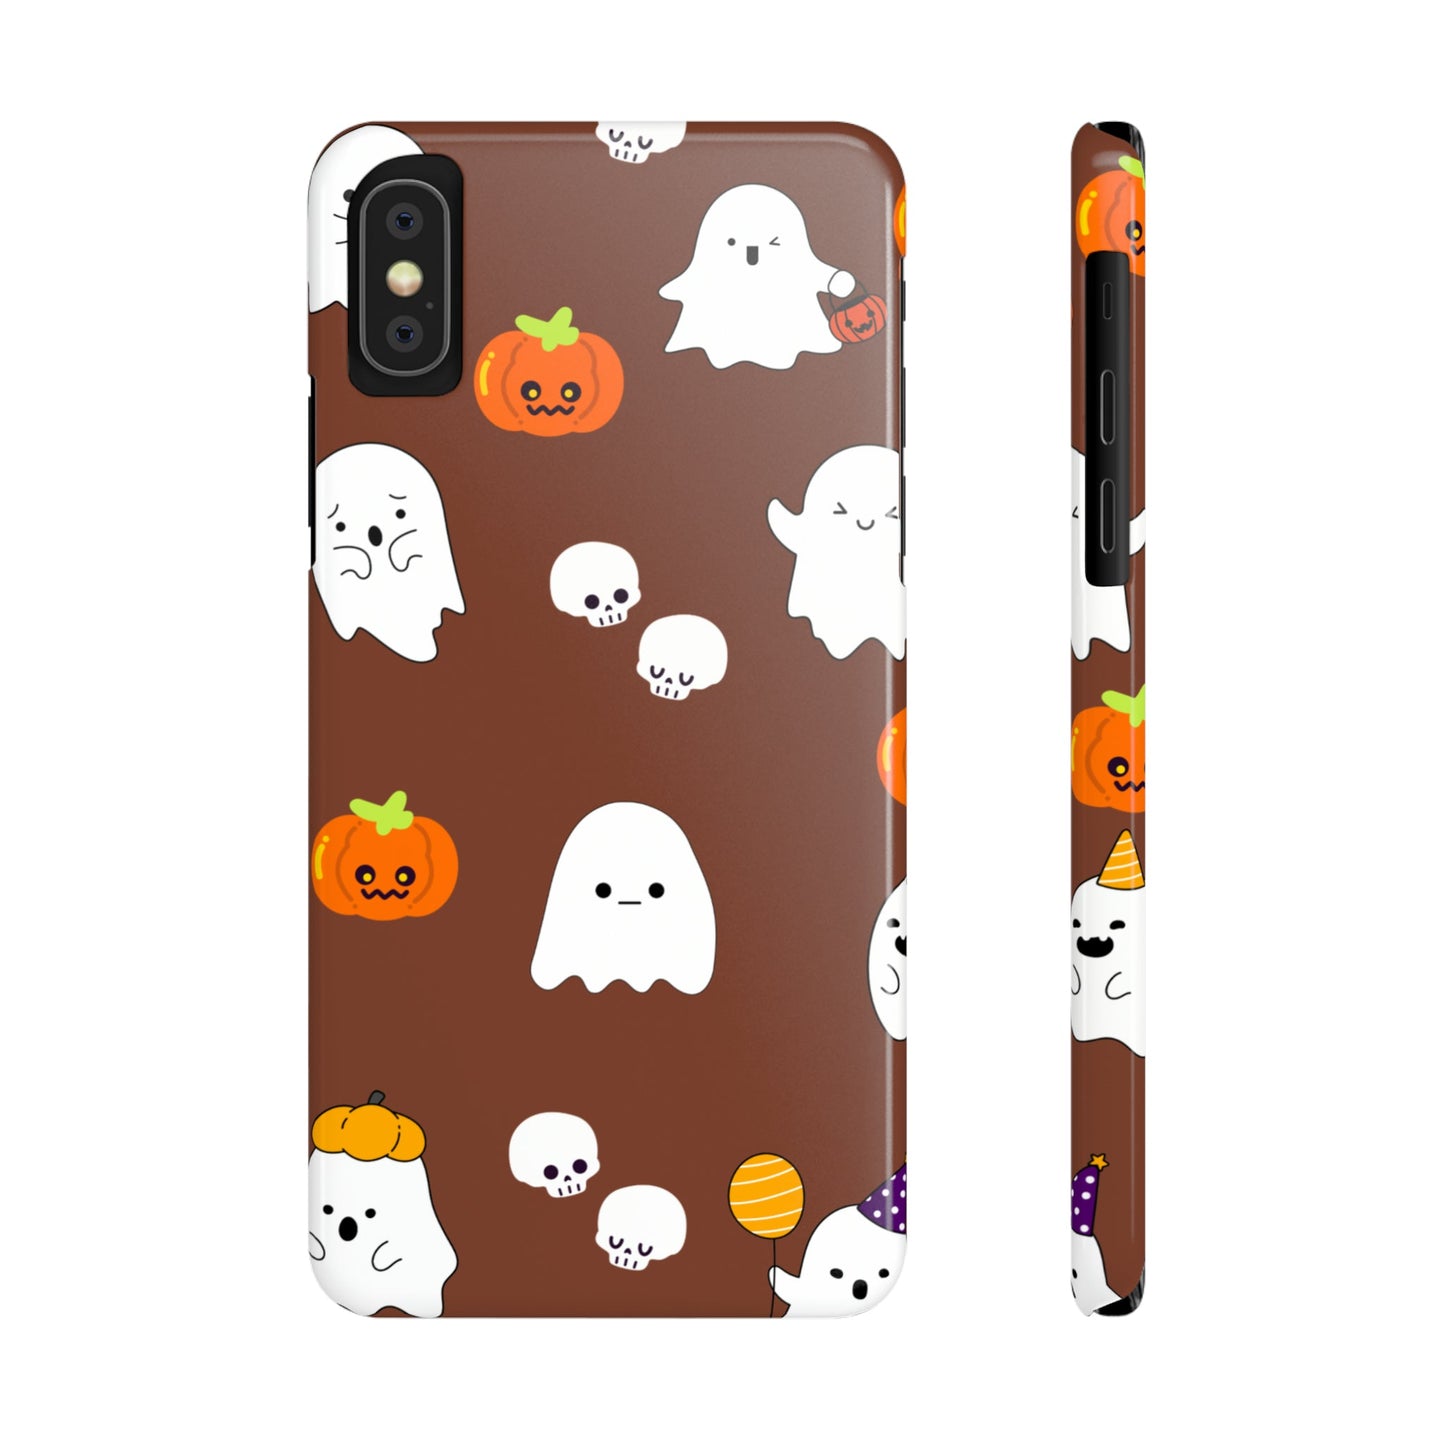 Ghost Slim Phone Cases DesignedbySiti